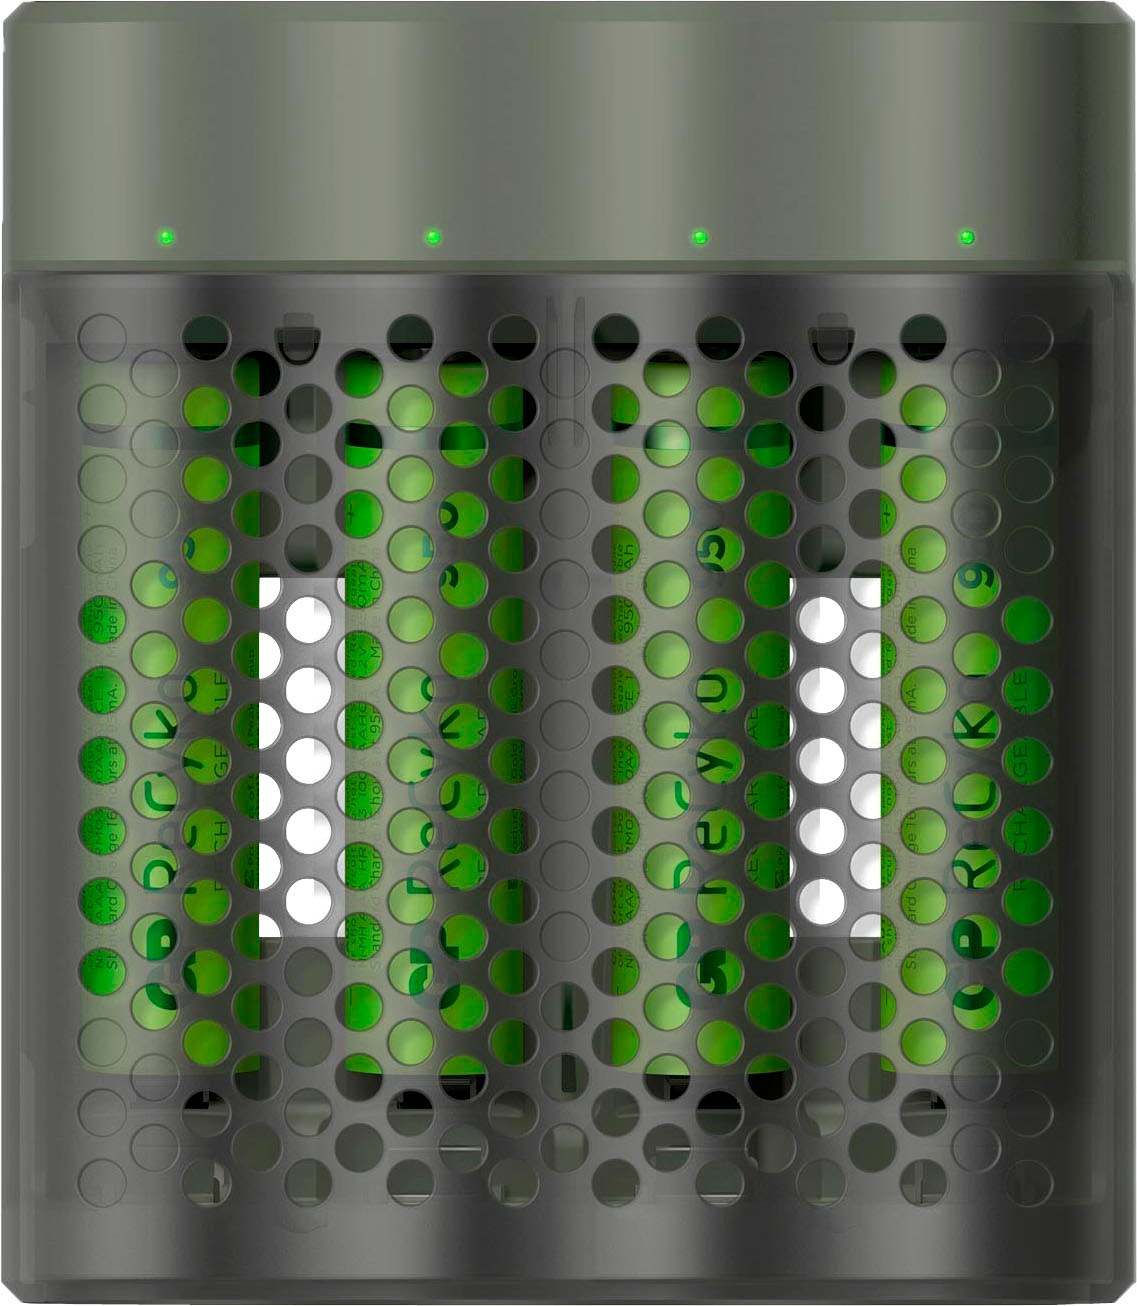 GP Batteries Batterie-Ladegerät »ReCyko Speed M451 4-fach NiMH mit 4 x AAA 950 mAh NiMH-Batterien«